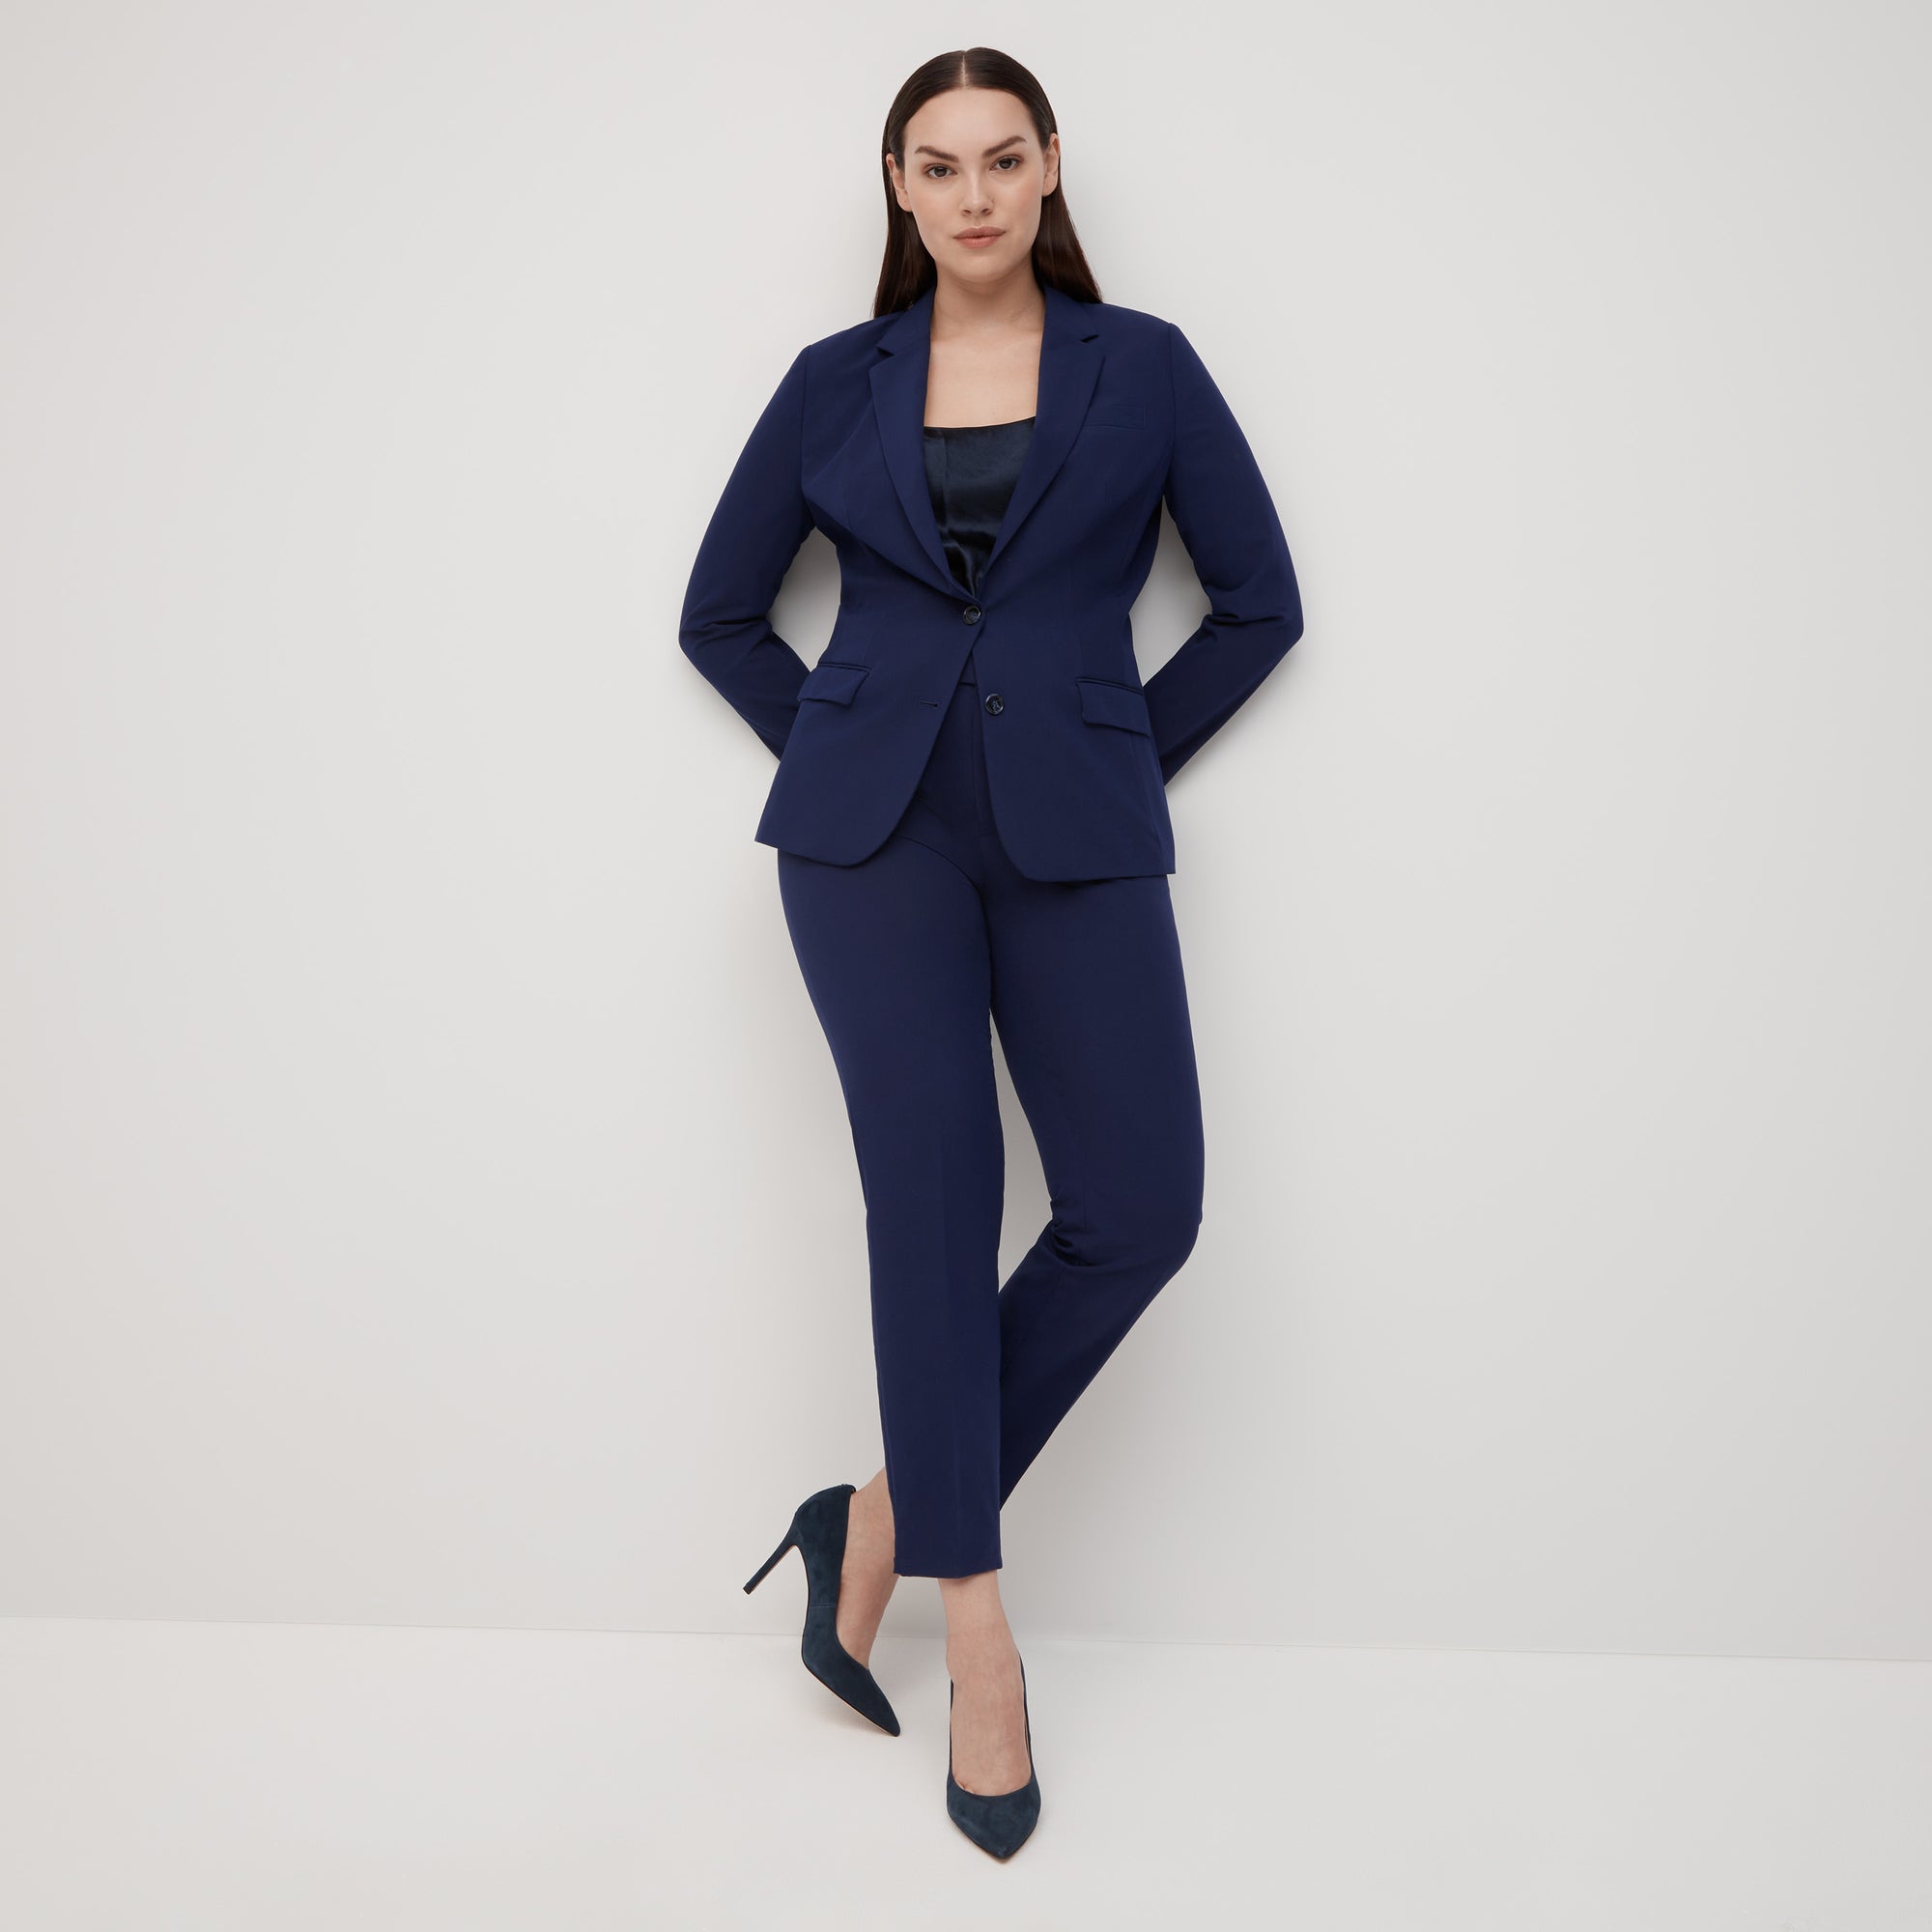 Women's Royal Blue Suit | SuitShop